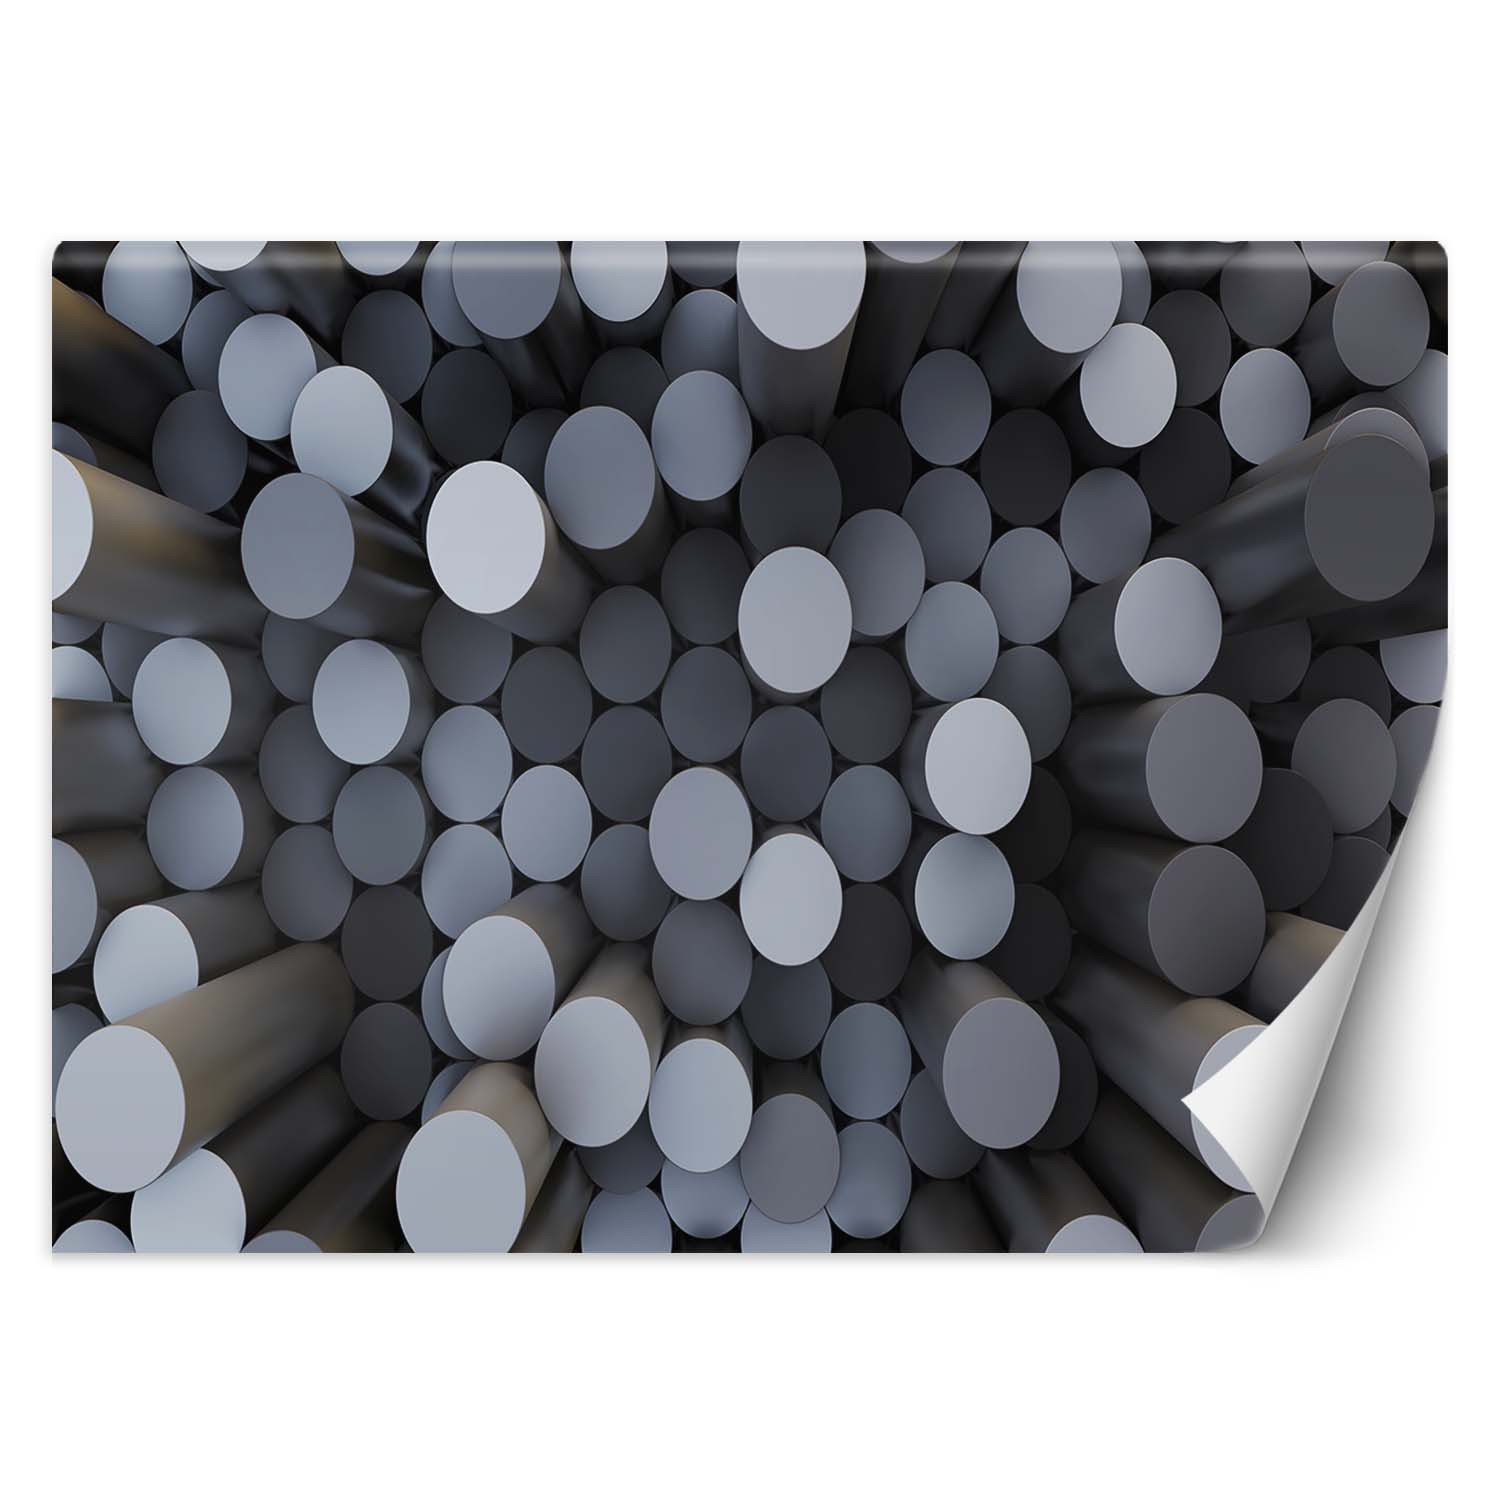 Trend24 – Behang – Abstracte Cilinders 3D – Vliesbehang – Fotobehang 3D – Behang Woonkamer – 450x315x2 cm – Incl. behanglijm